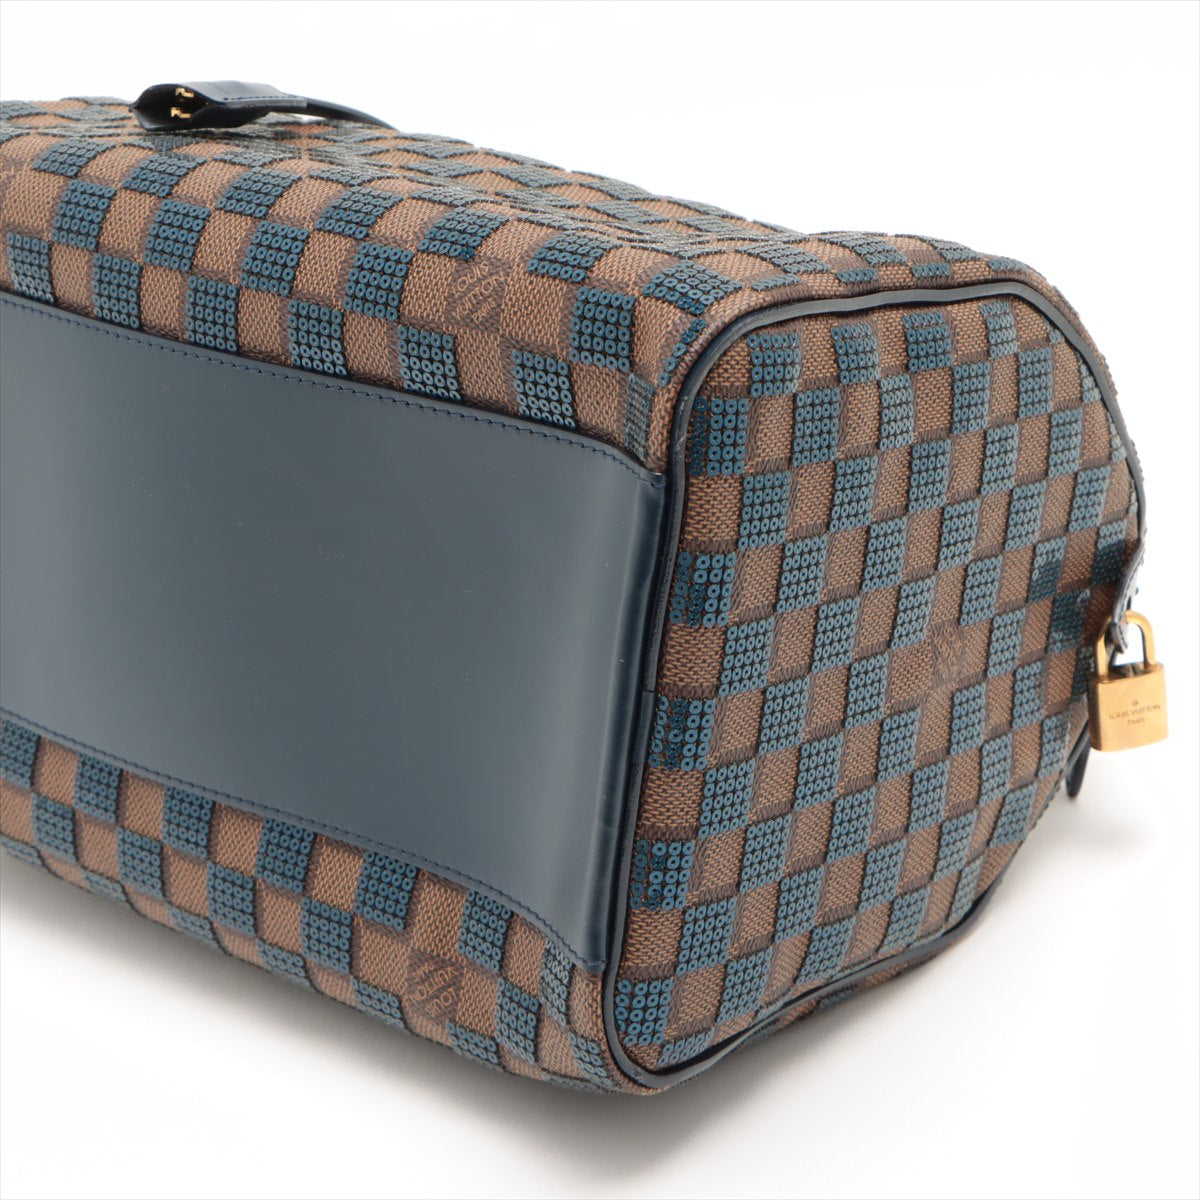 Louis Vuitton Blue Damier Ebene Paillettes Limited Edition Speedy 30 Bag  Louis Vuitton